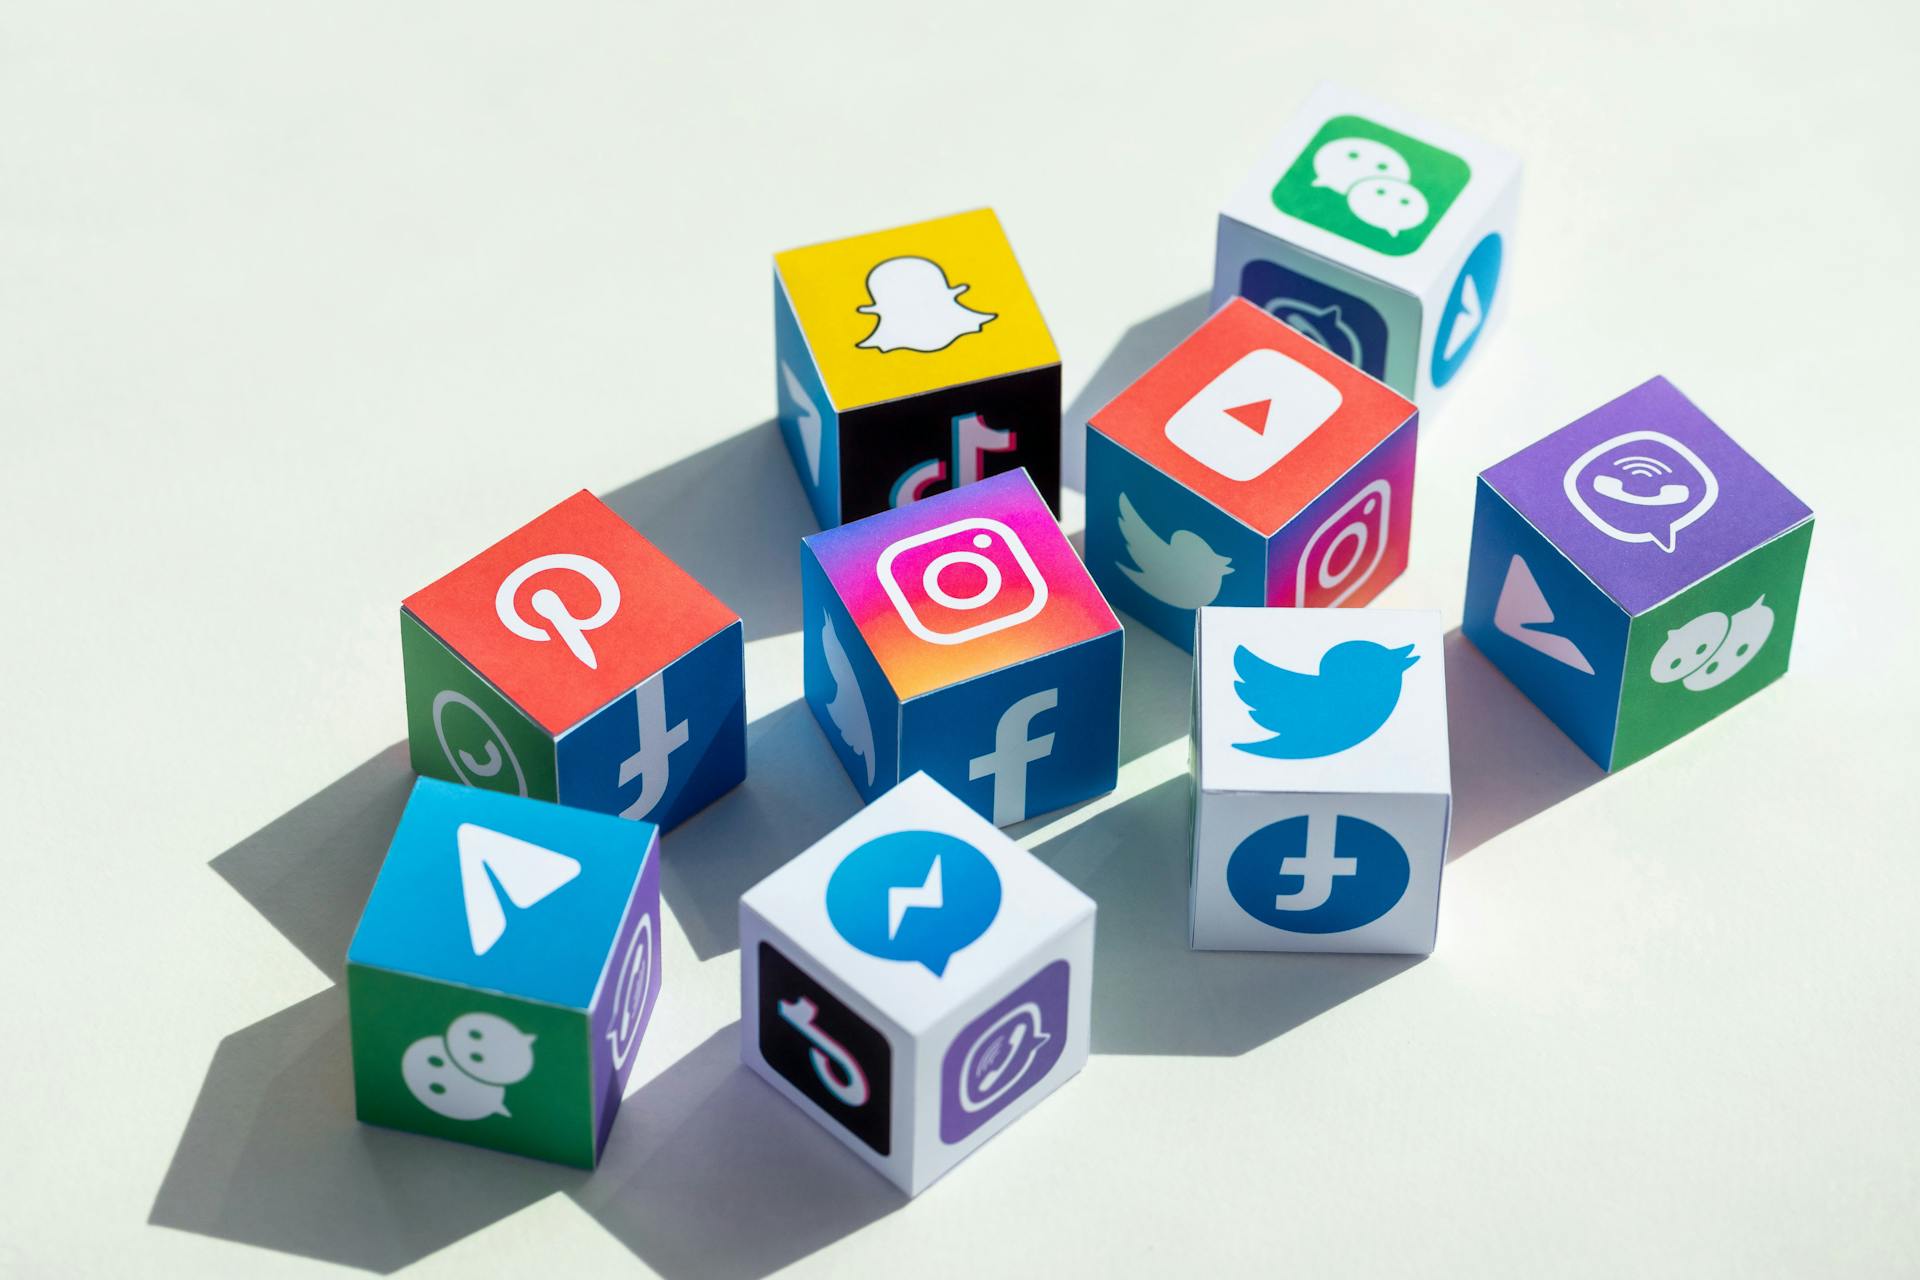 Cube avec des logos des médias sociaux comme Twitter, Facebook, Messenger, Instagram, etc.